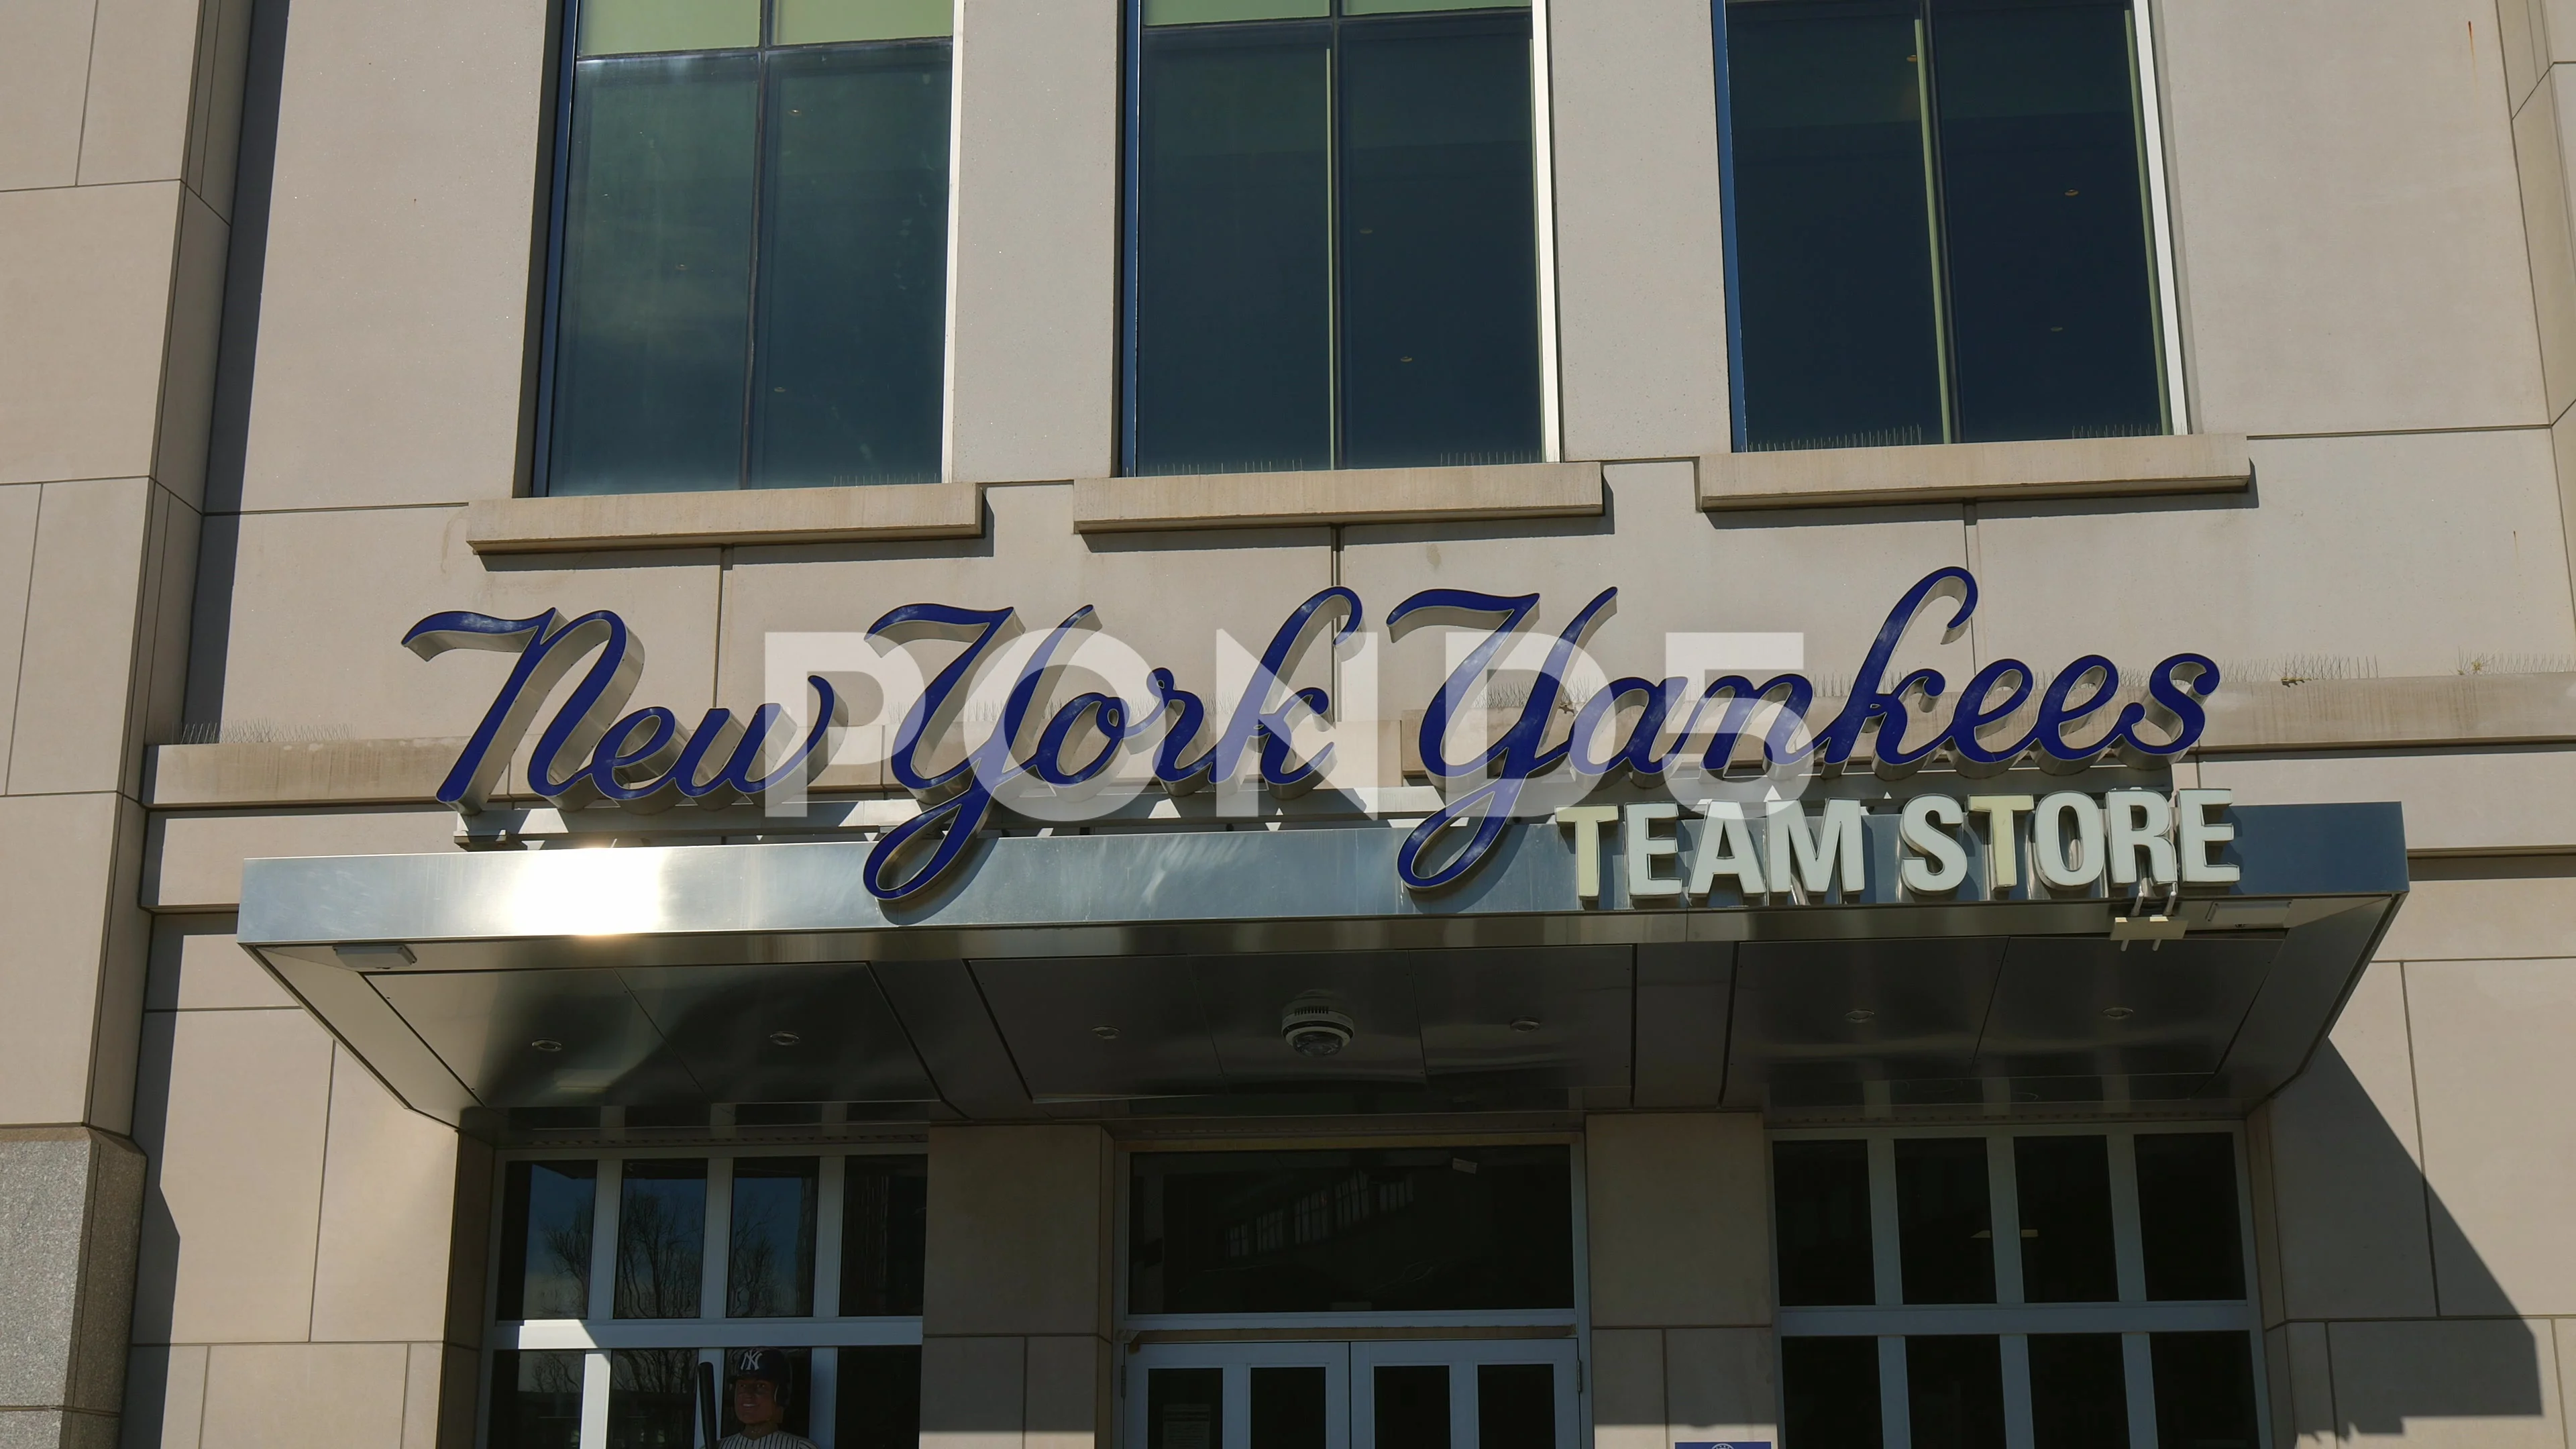 Yankee Stadium in New York - NEW YORK, U, Stock Video